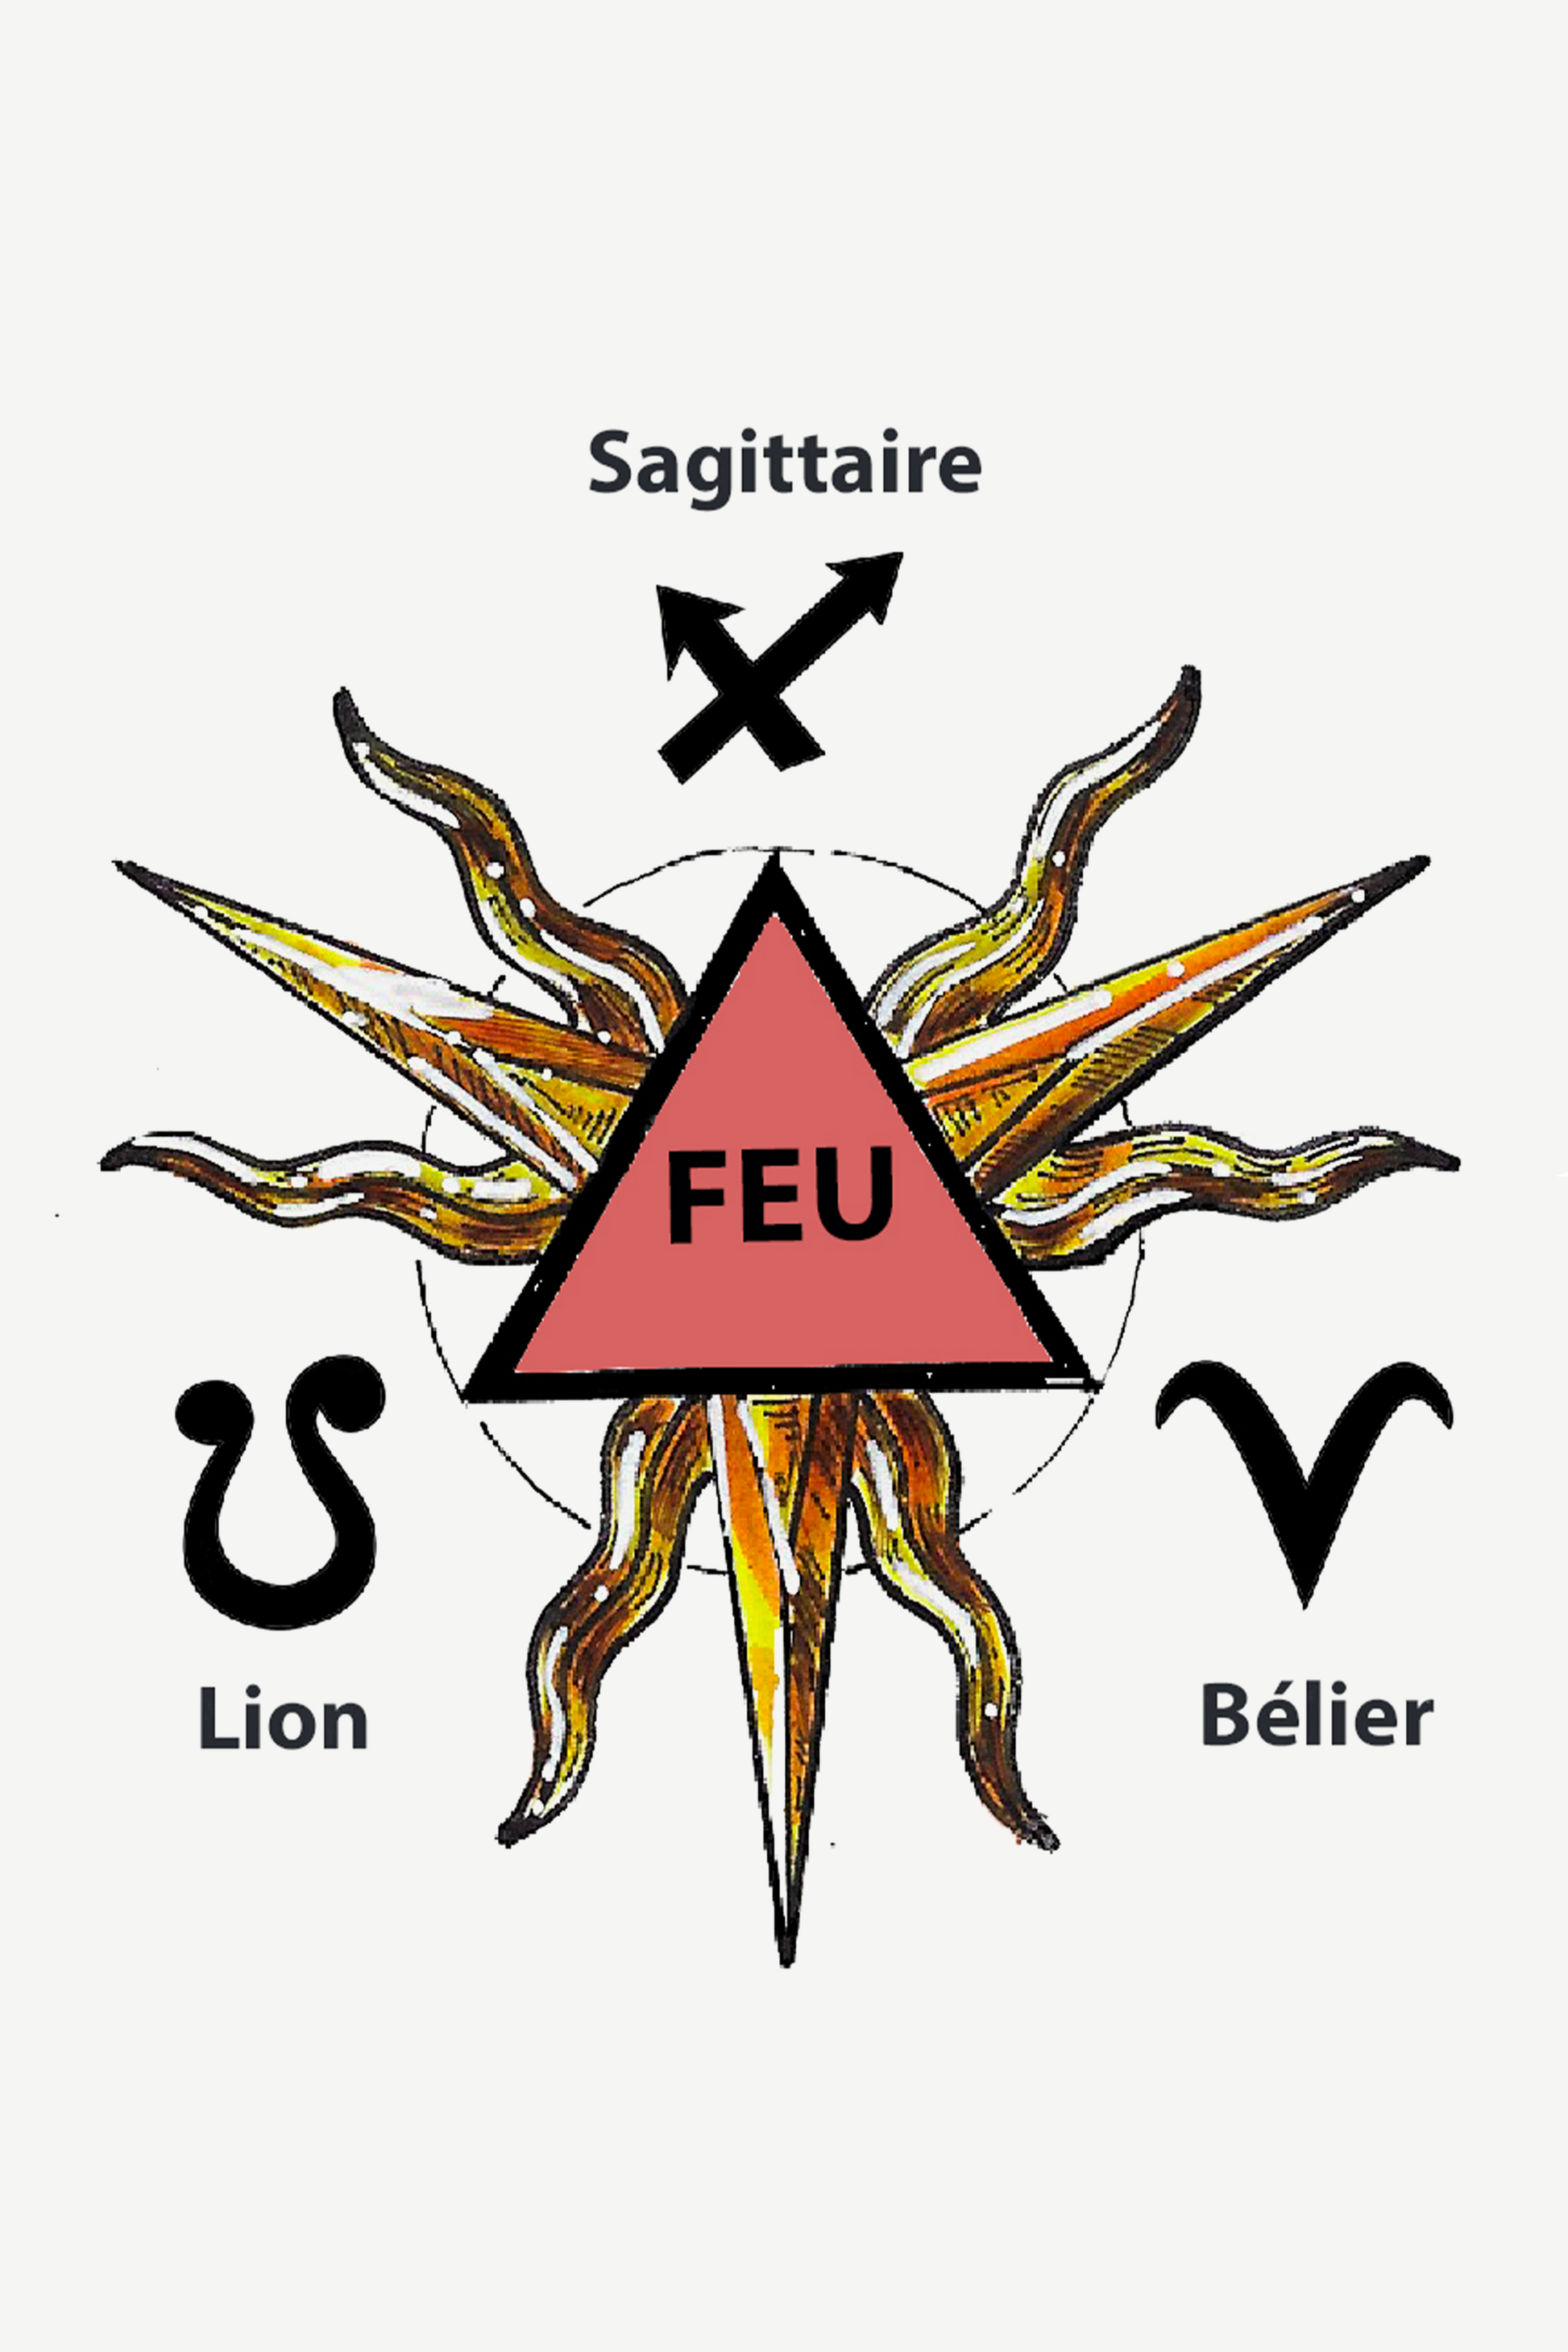 elie top zodiac signs sagittaire lion belier